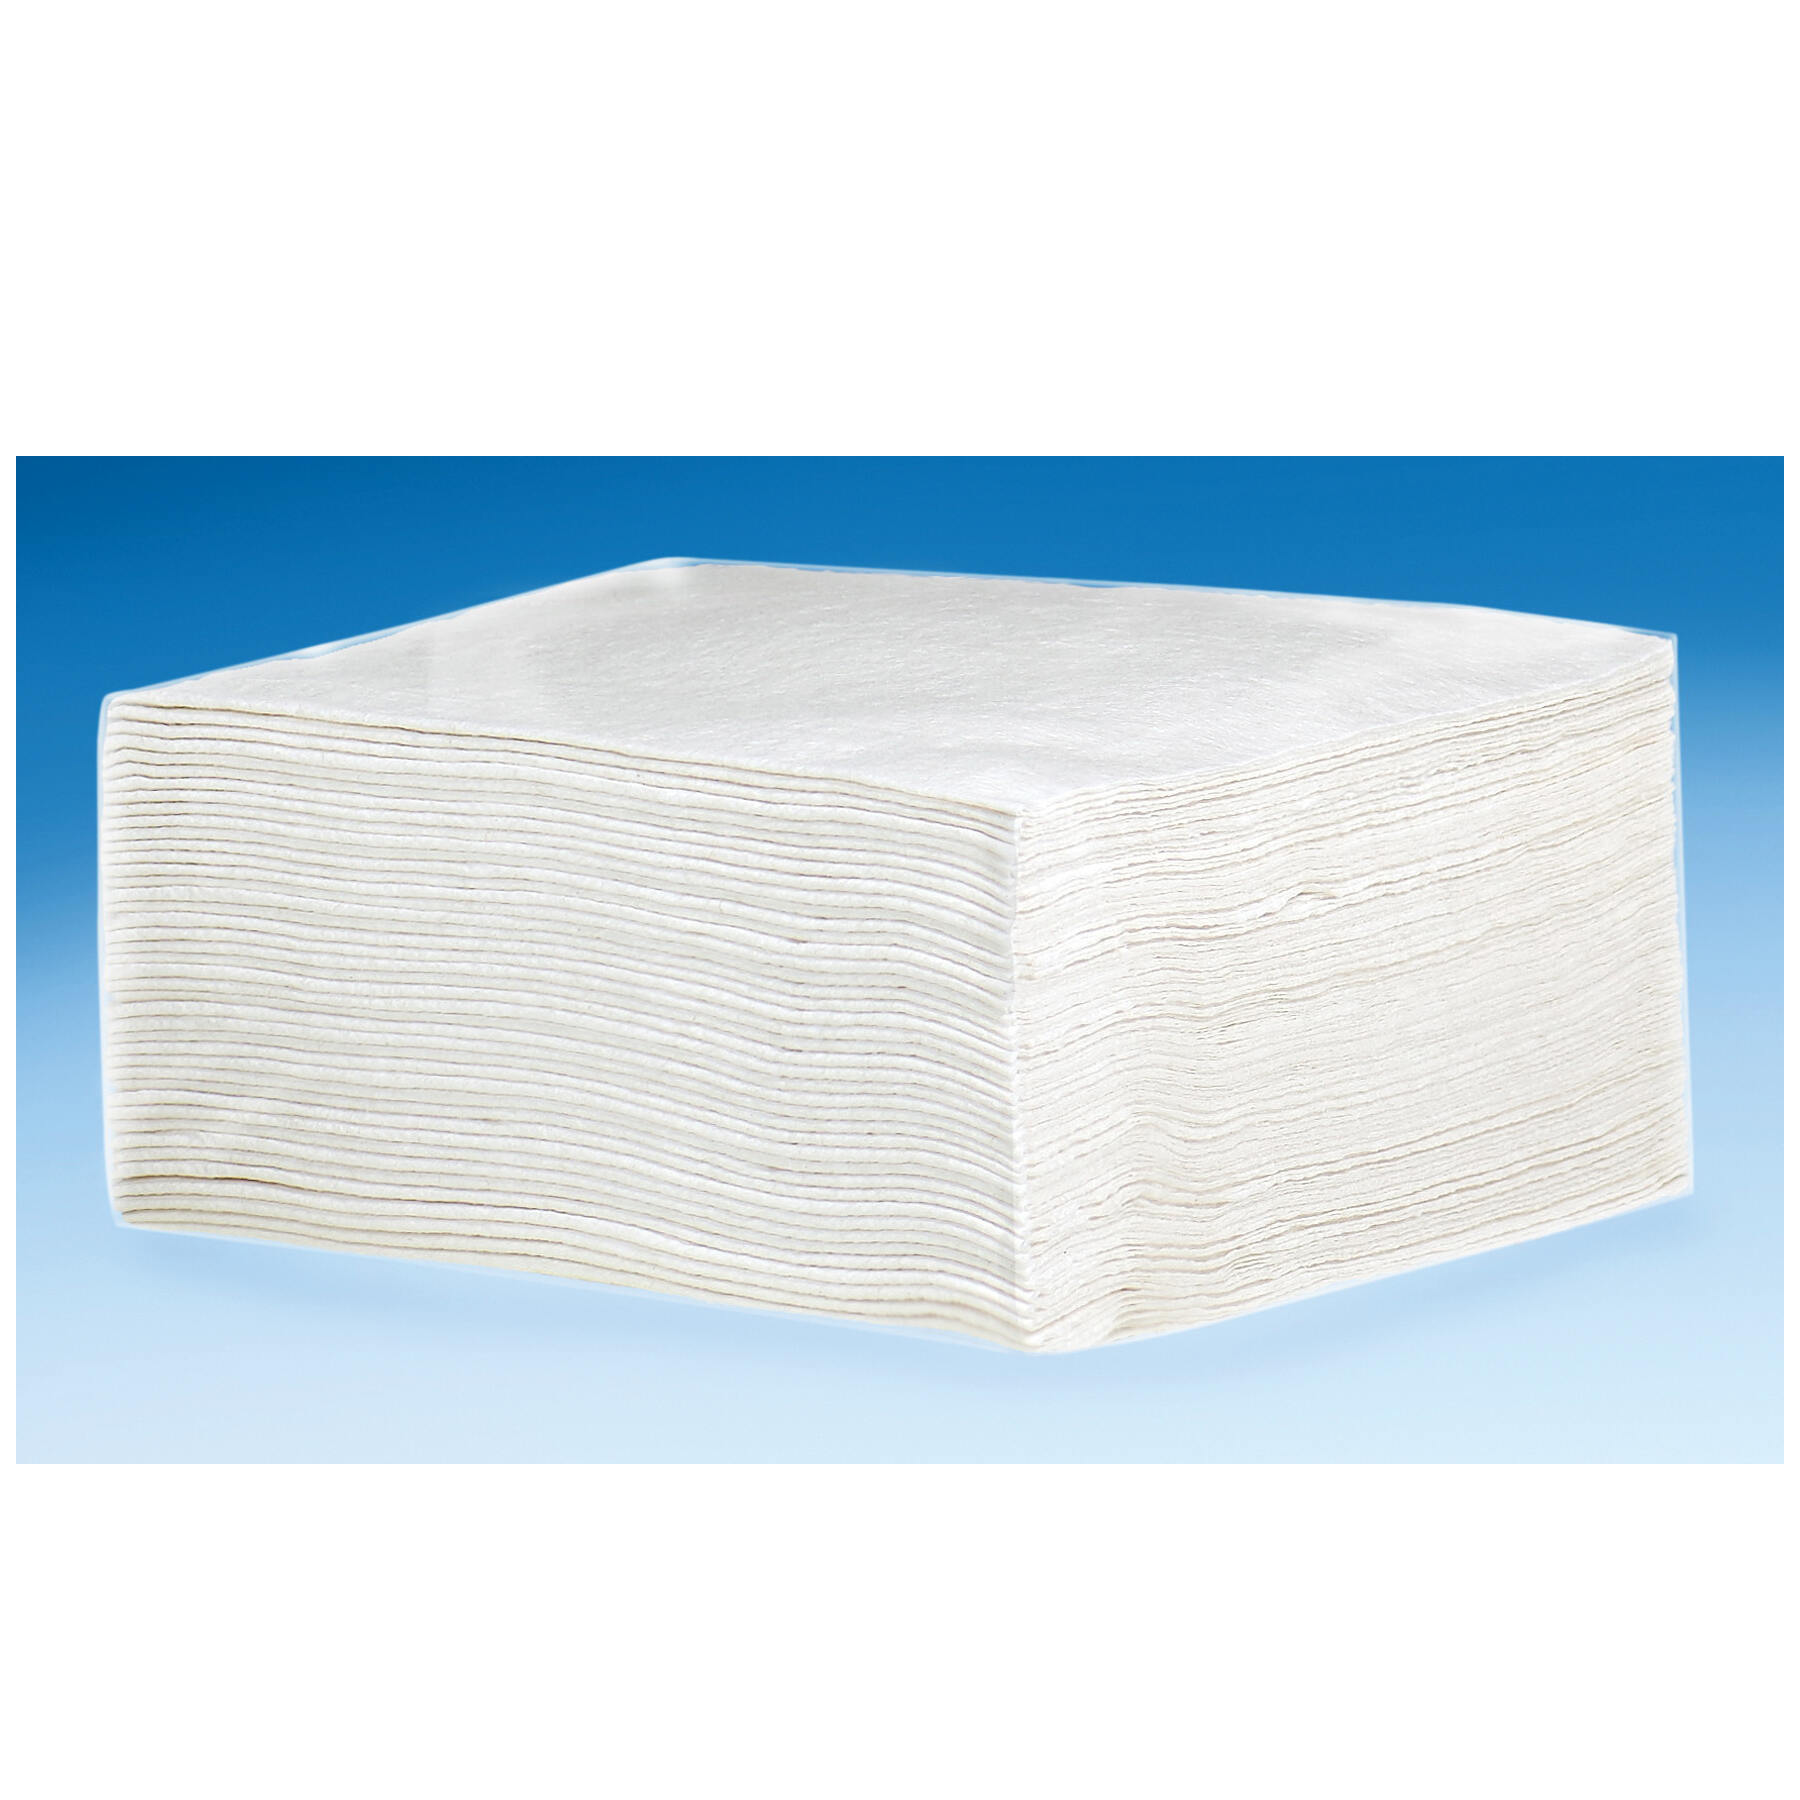 Uline Microfiber General Purpose Towels - Blue S-12812 - Uline